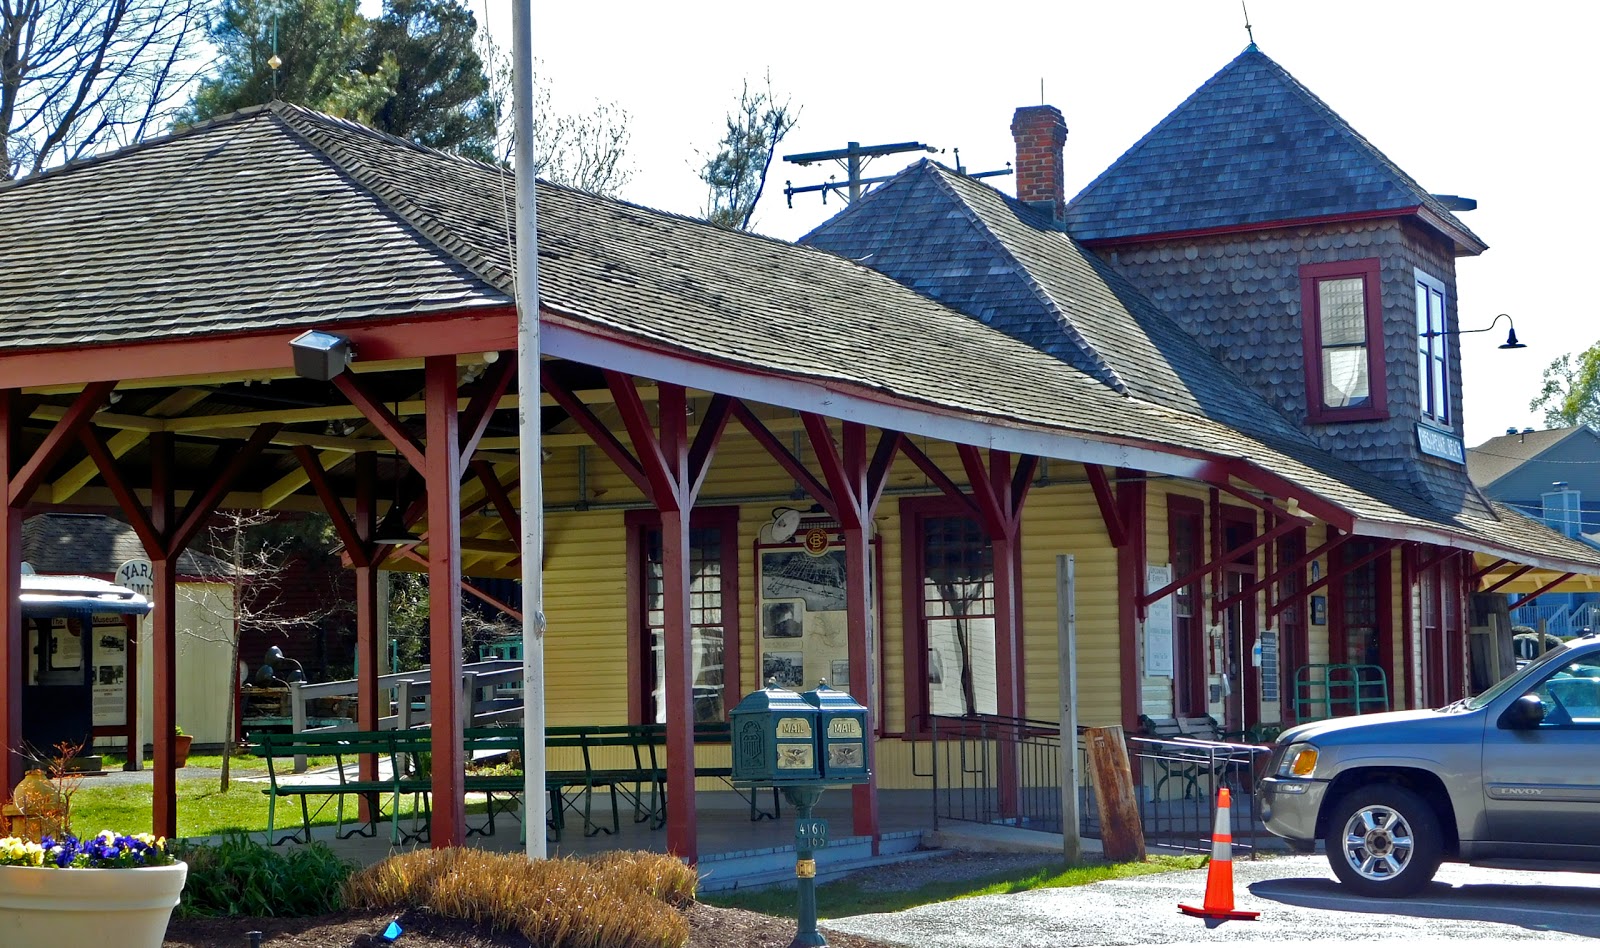 The Chesapeake Beach Railway Museum